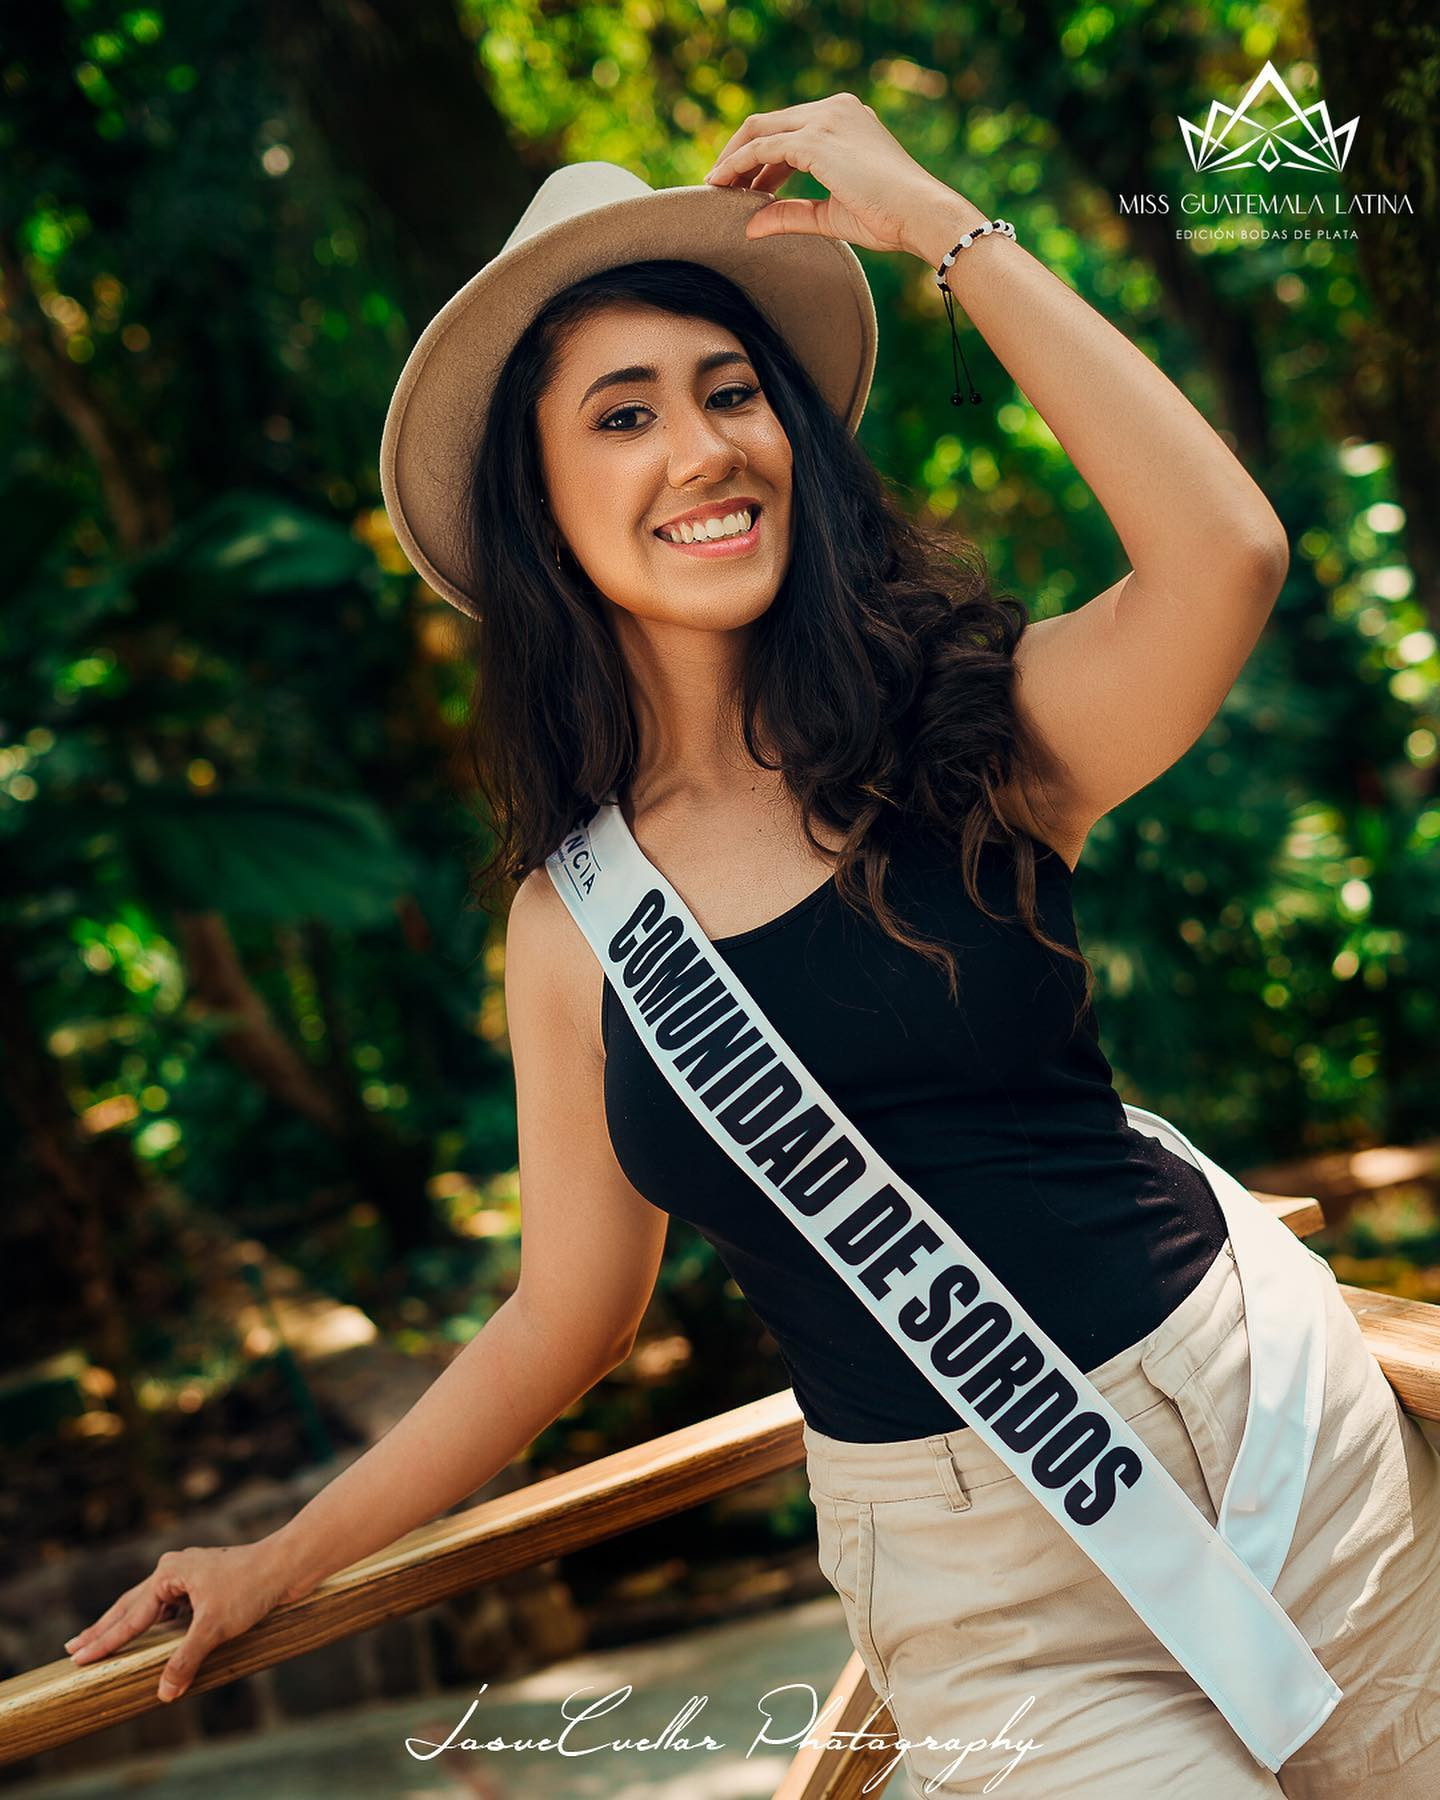 Latina - candidatas a miss guatemala latina 2021. final: 30 de abril. - Página 7 BFjkRn